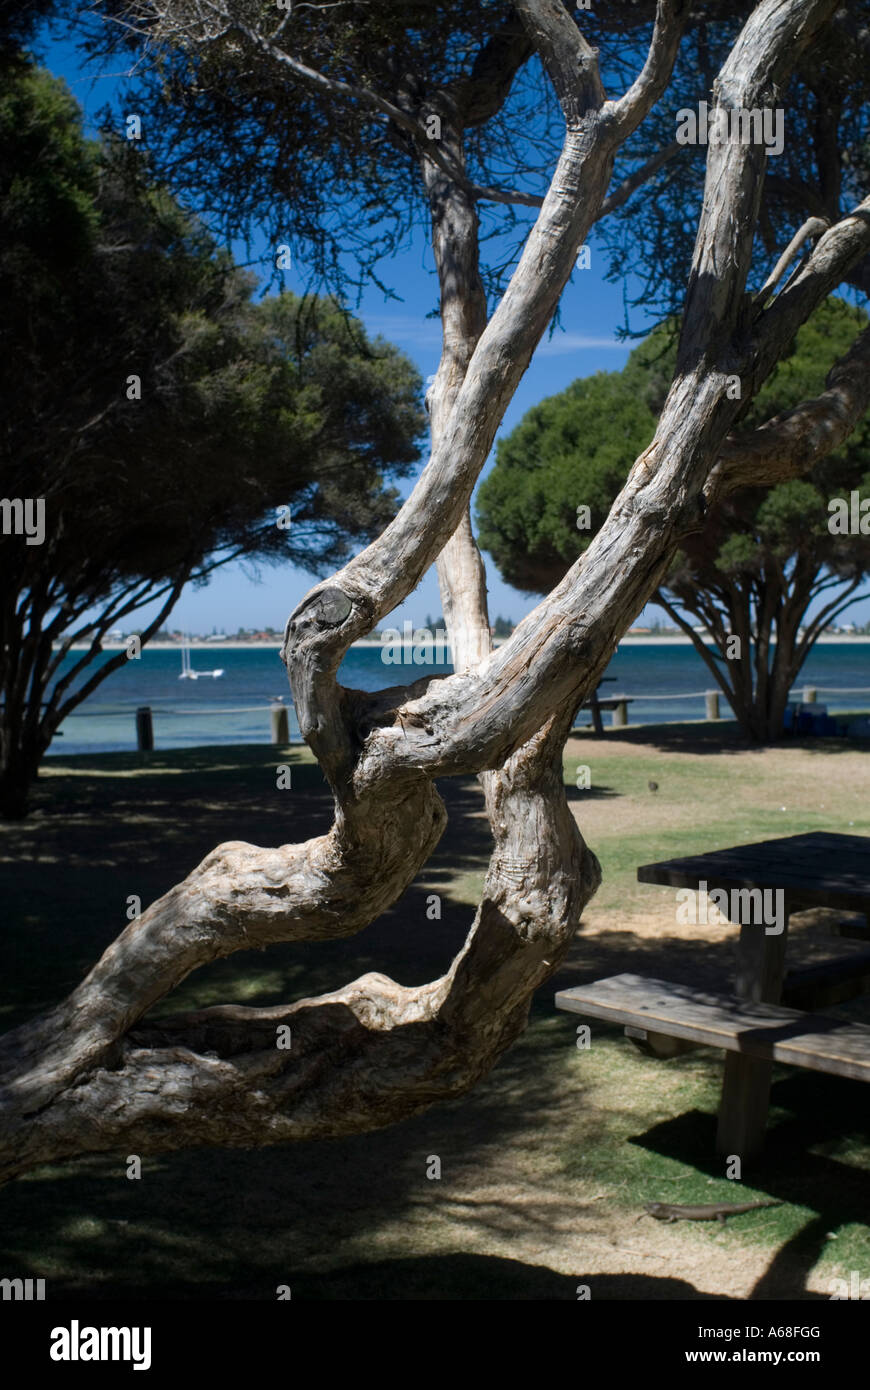 Arbre tordu tronc et branches sur l'Île Penguin, Perth, Australie occidentale Banque D'Images